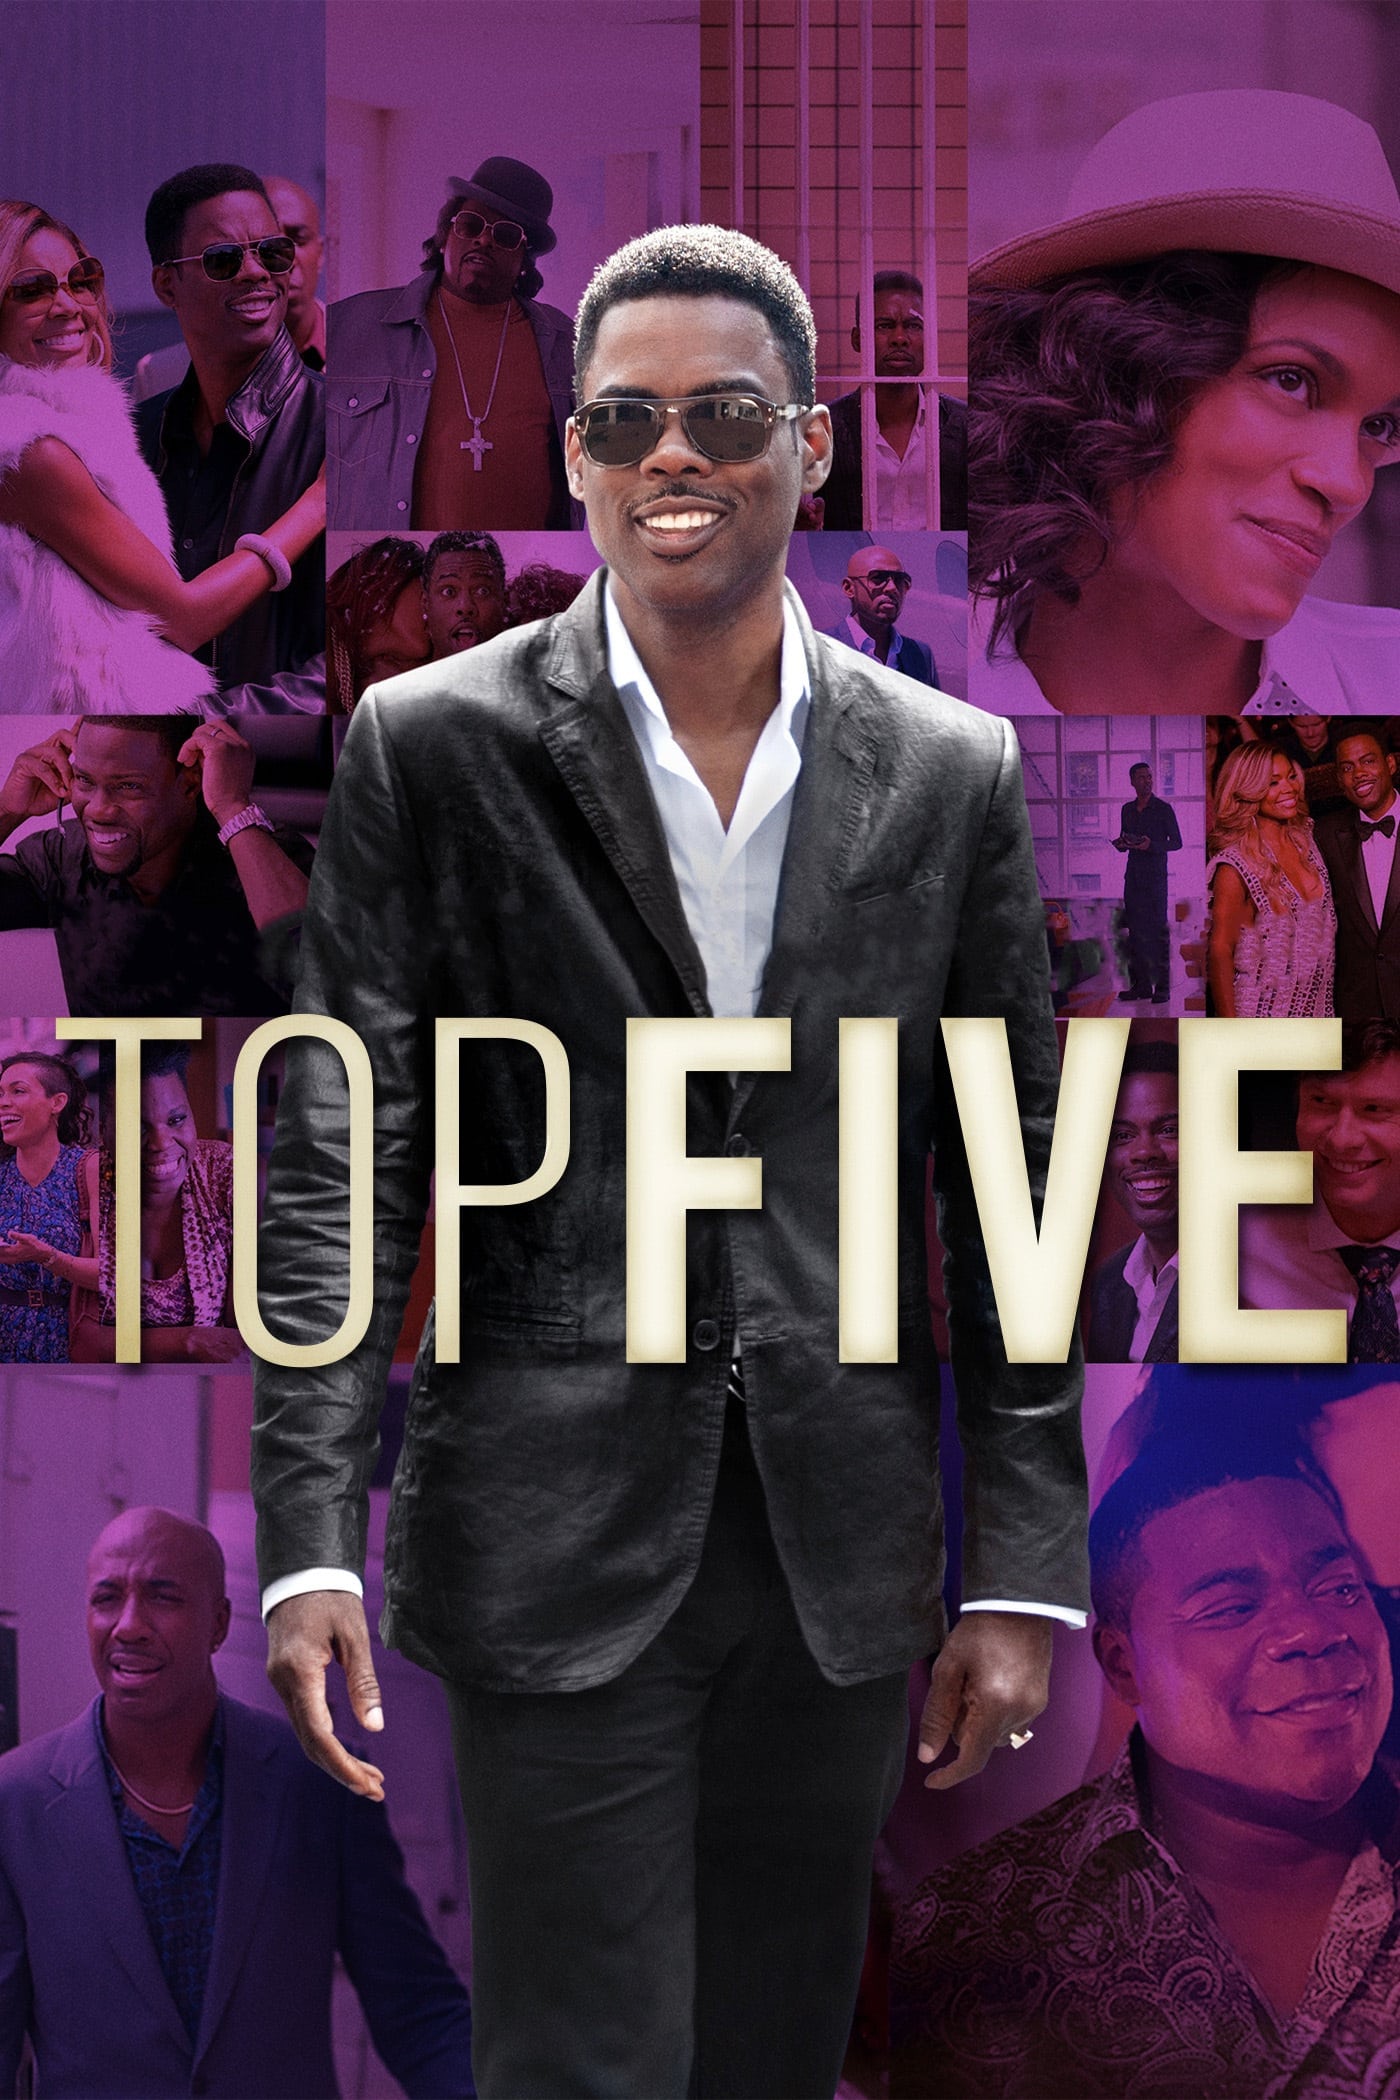 Top Five (2014)